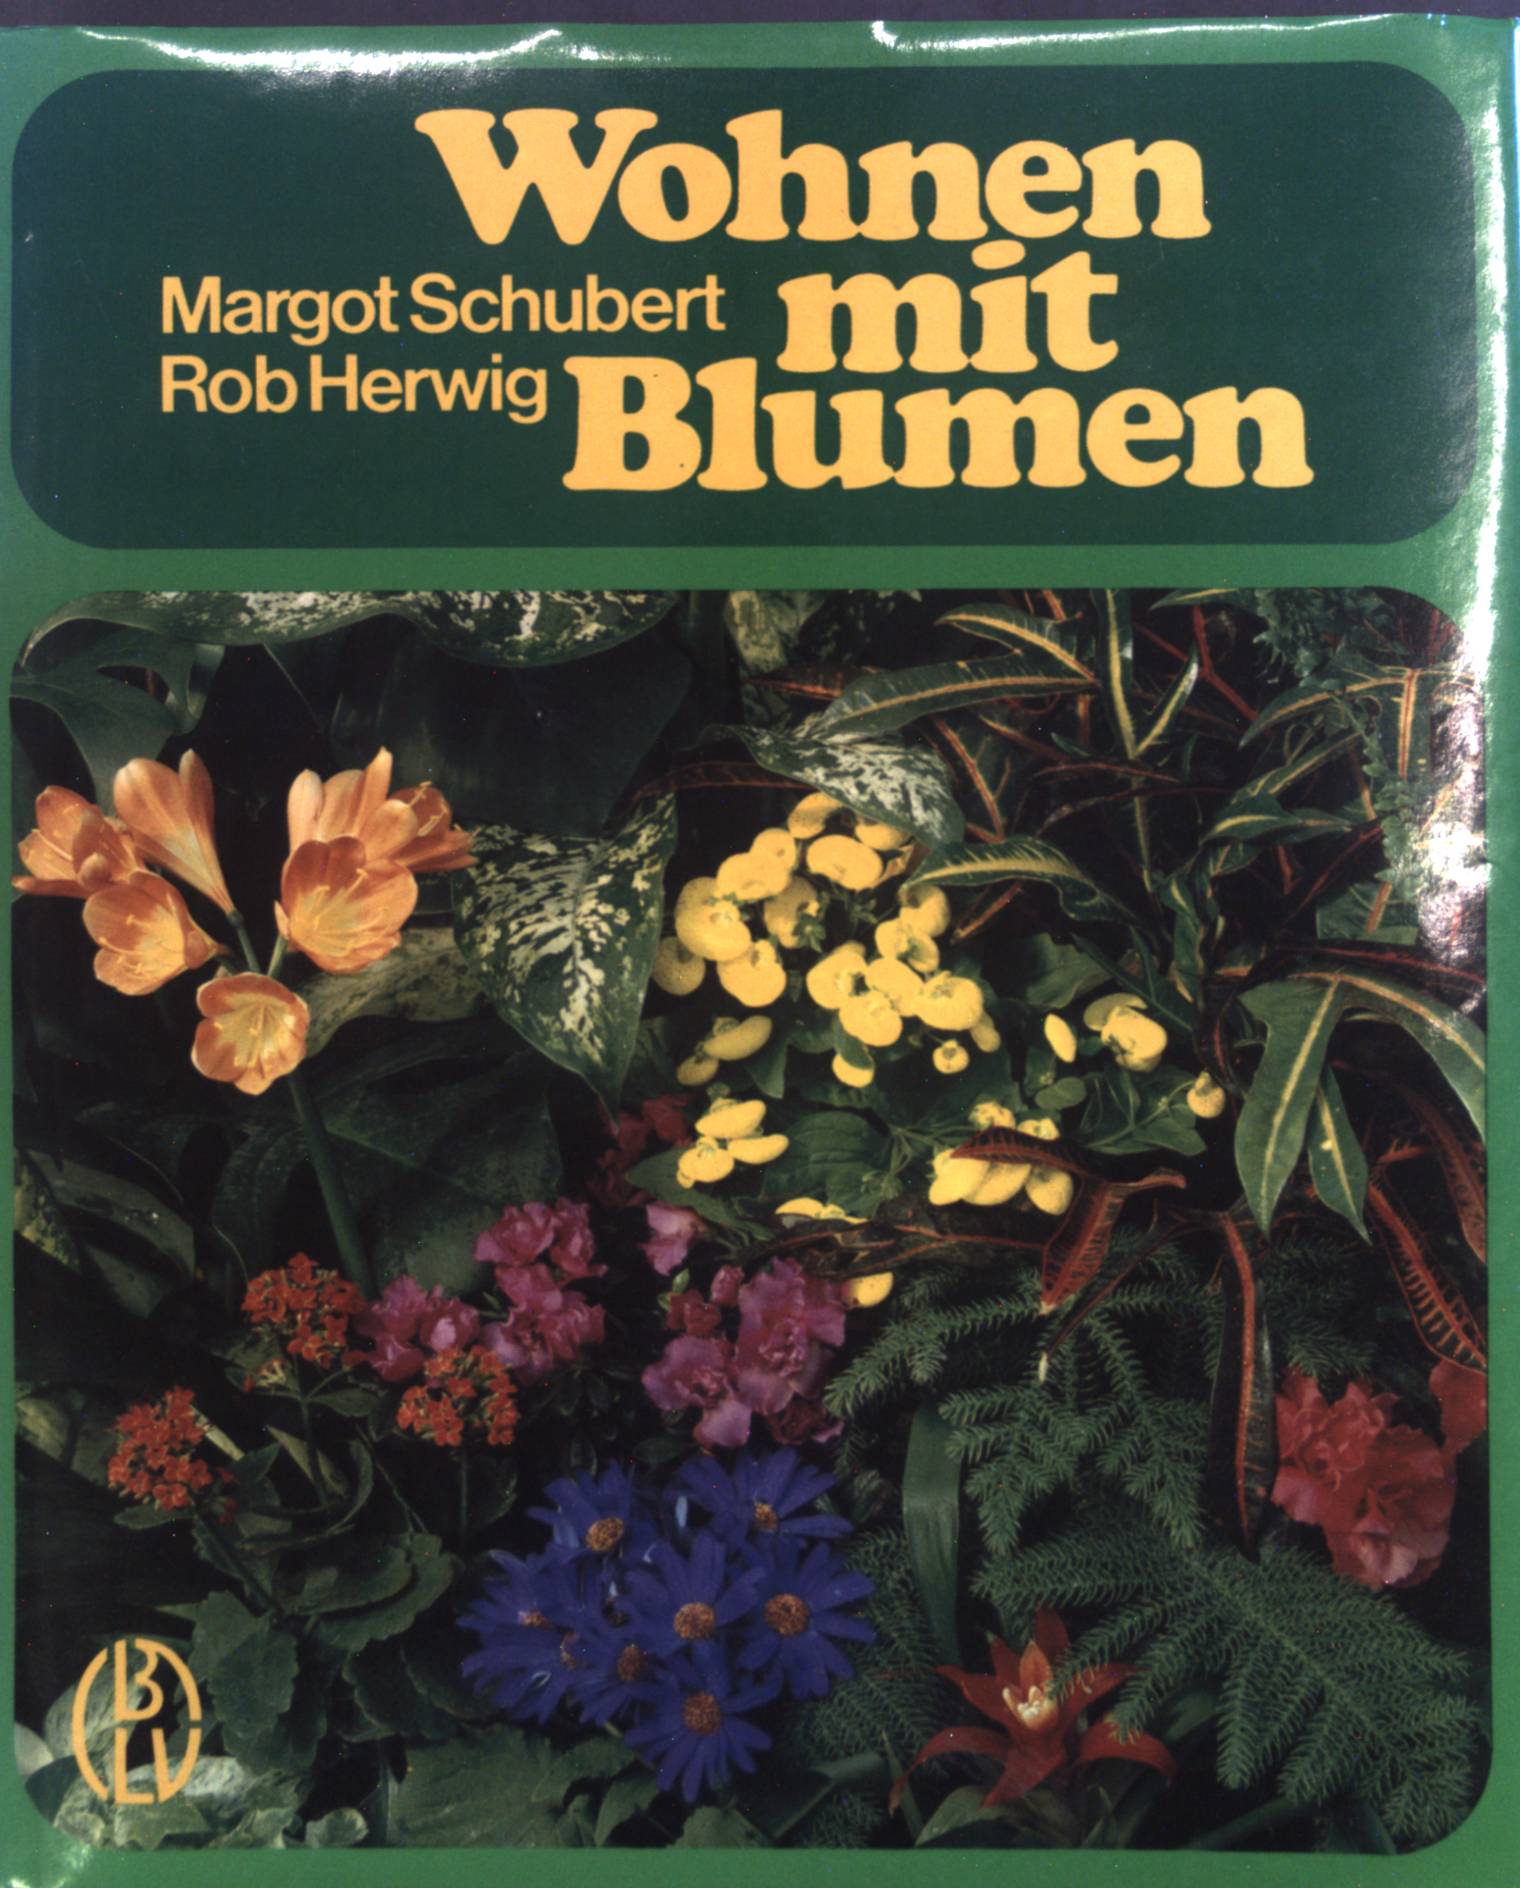 Wohnen mit Blumen : Der große farb. Ratgeber - über 1000 Zimmerpflanzen. - Schubert, Margot und Rob Herwig